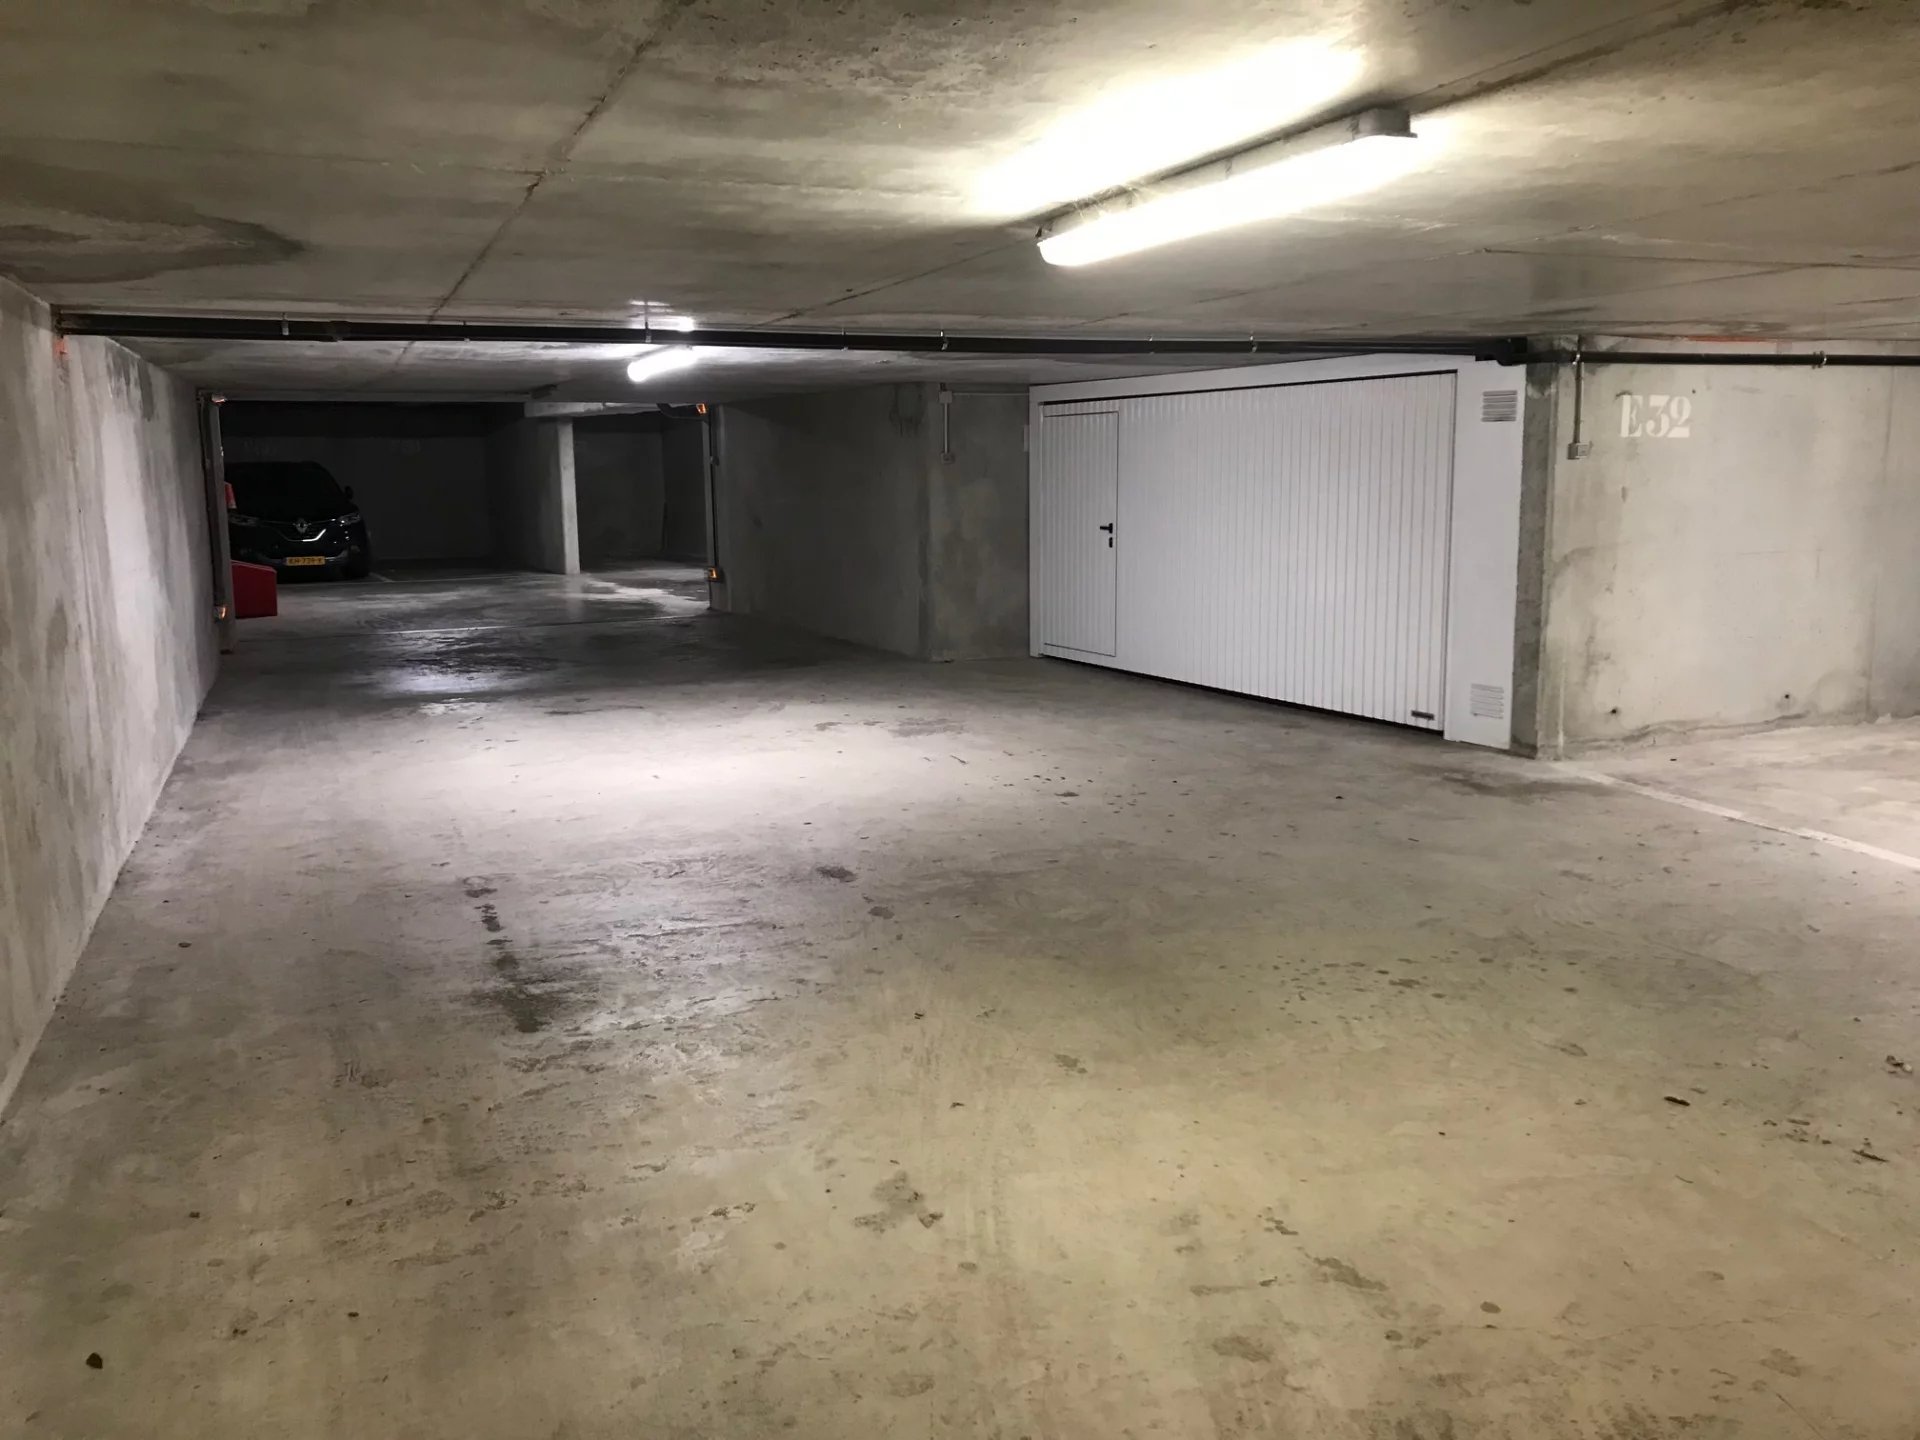 Parking space in underground garage